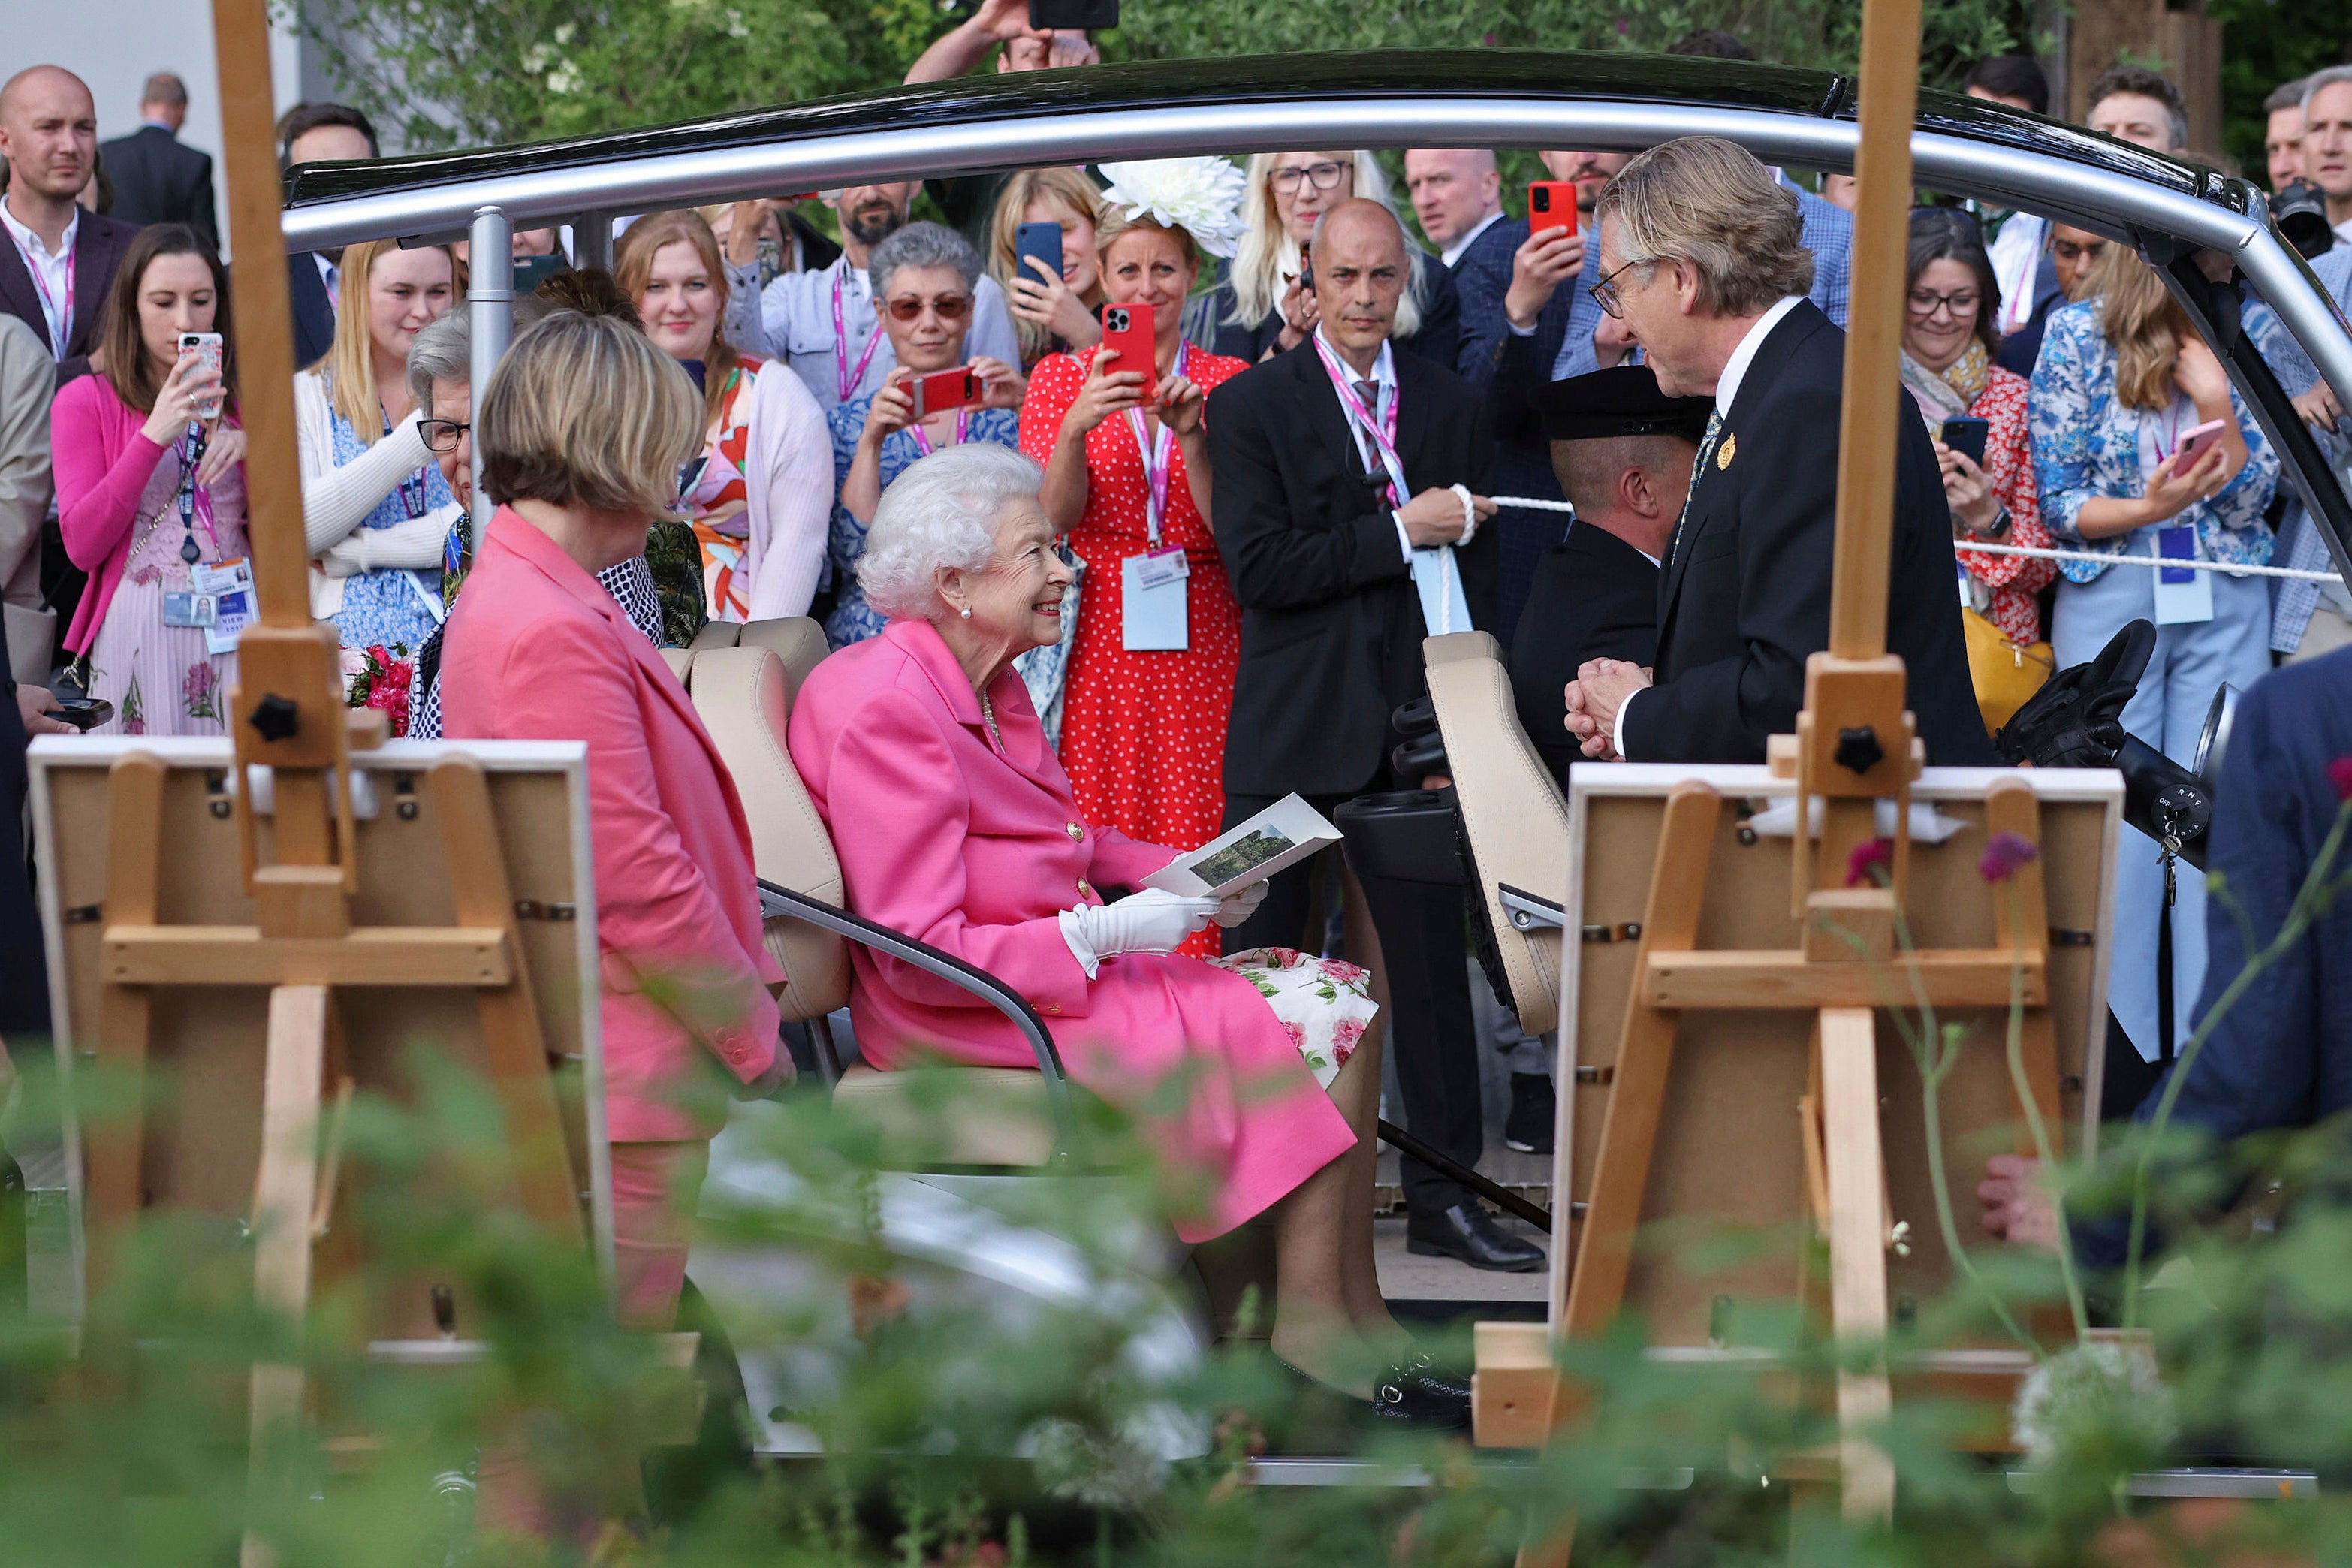 La reina ha asistido al Festival de Flores de Chelsea más de 50 veces durante su reinado, incluido este año